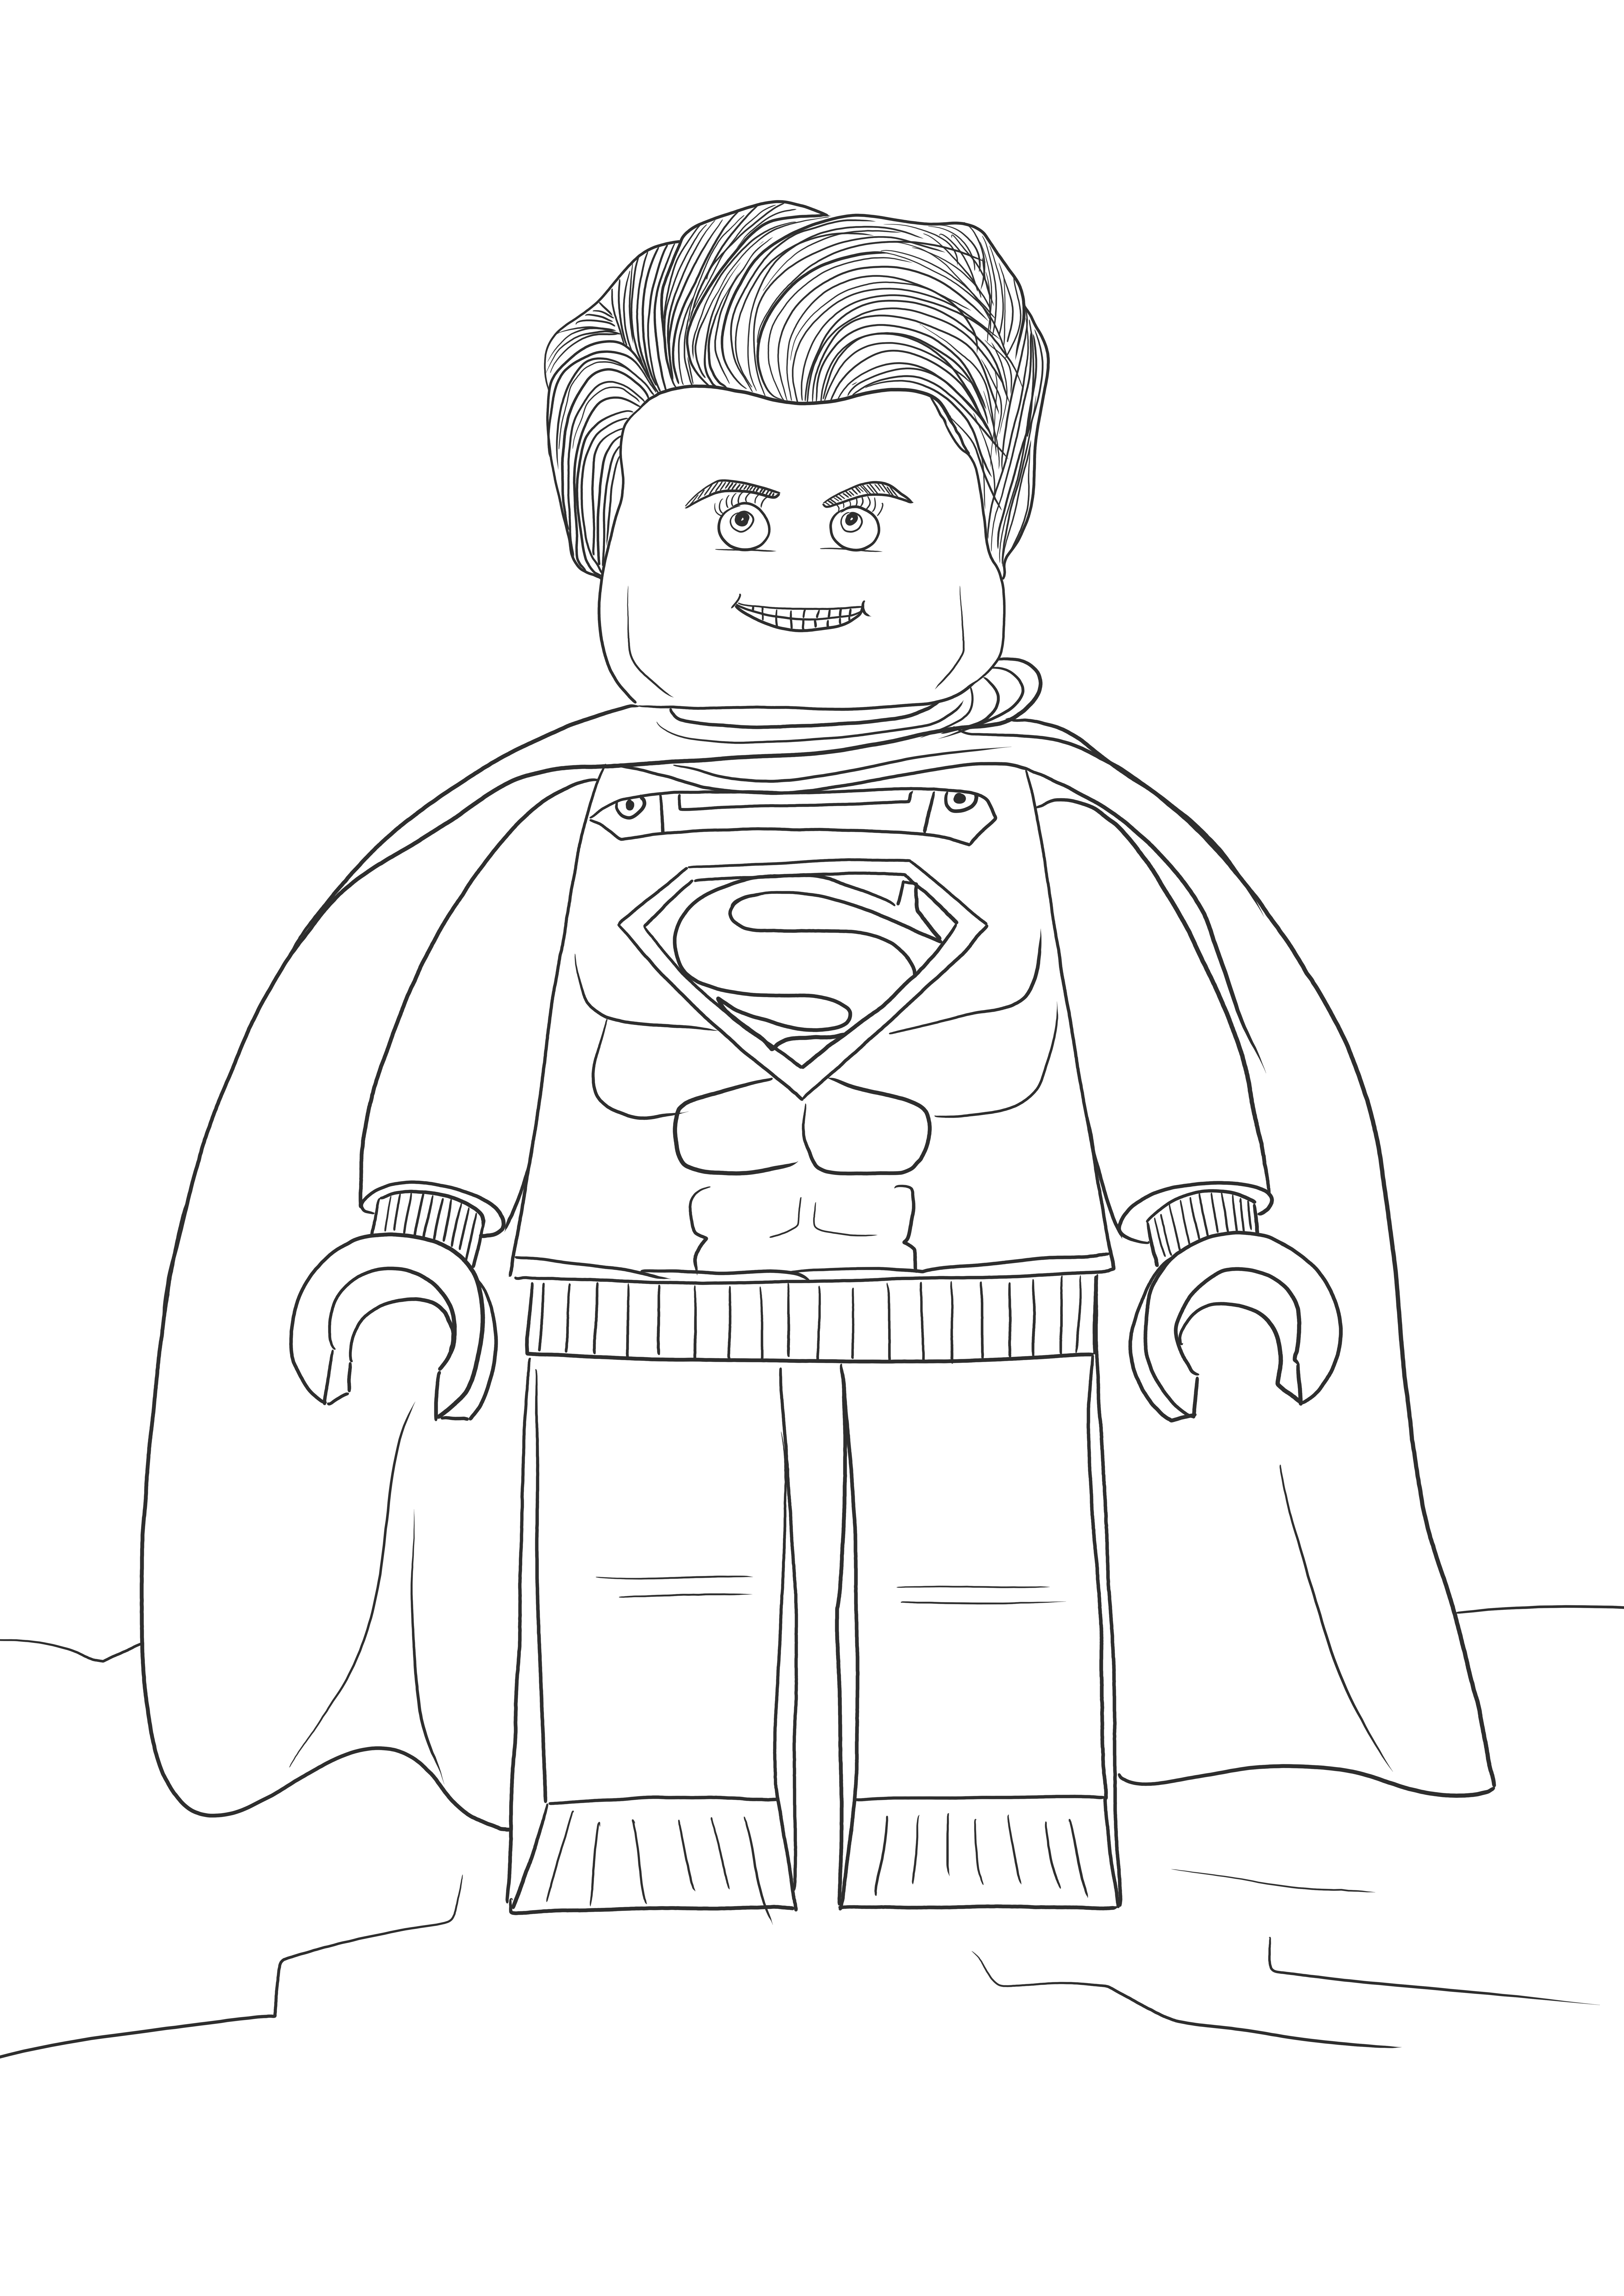 Lego Superman grátis para imprimir ou baixar imagens para as crianças colorirem